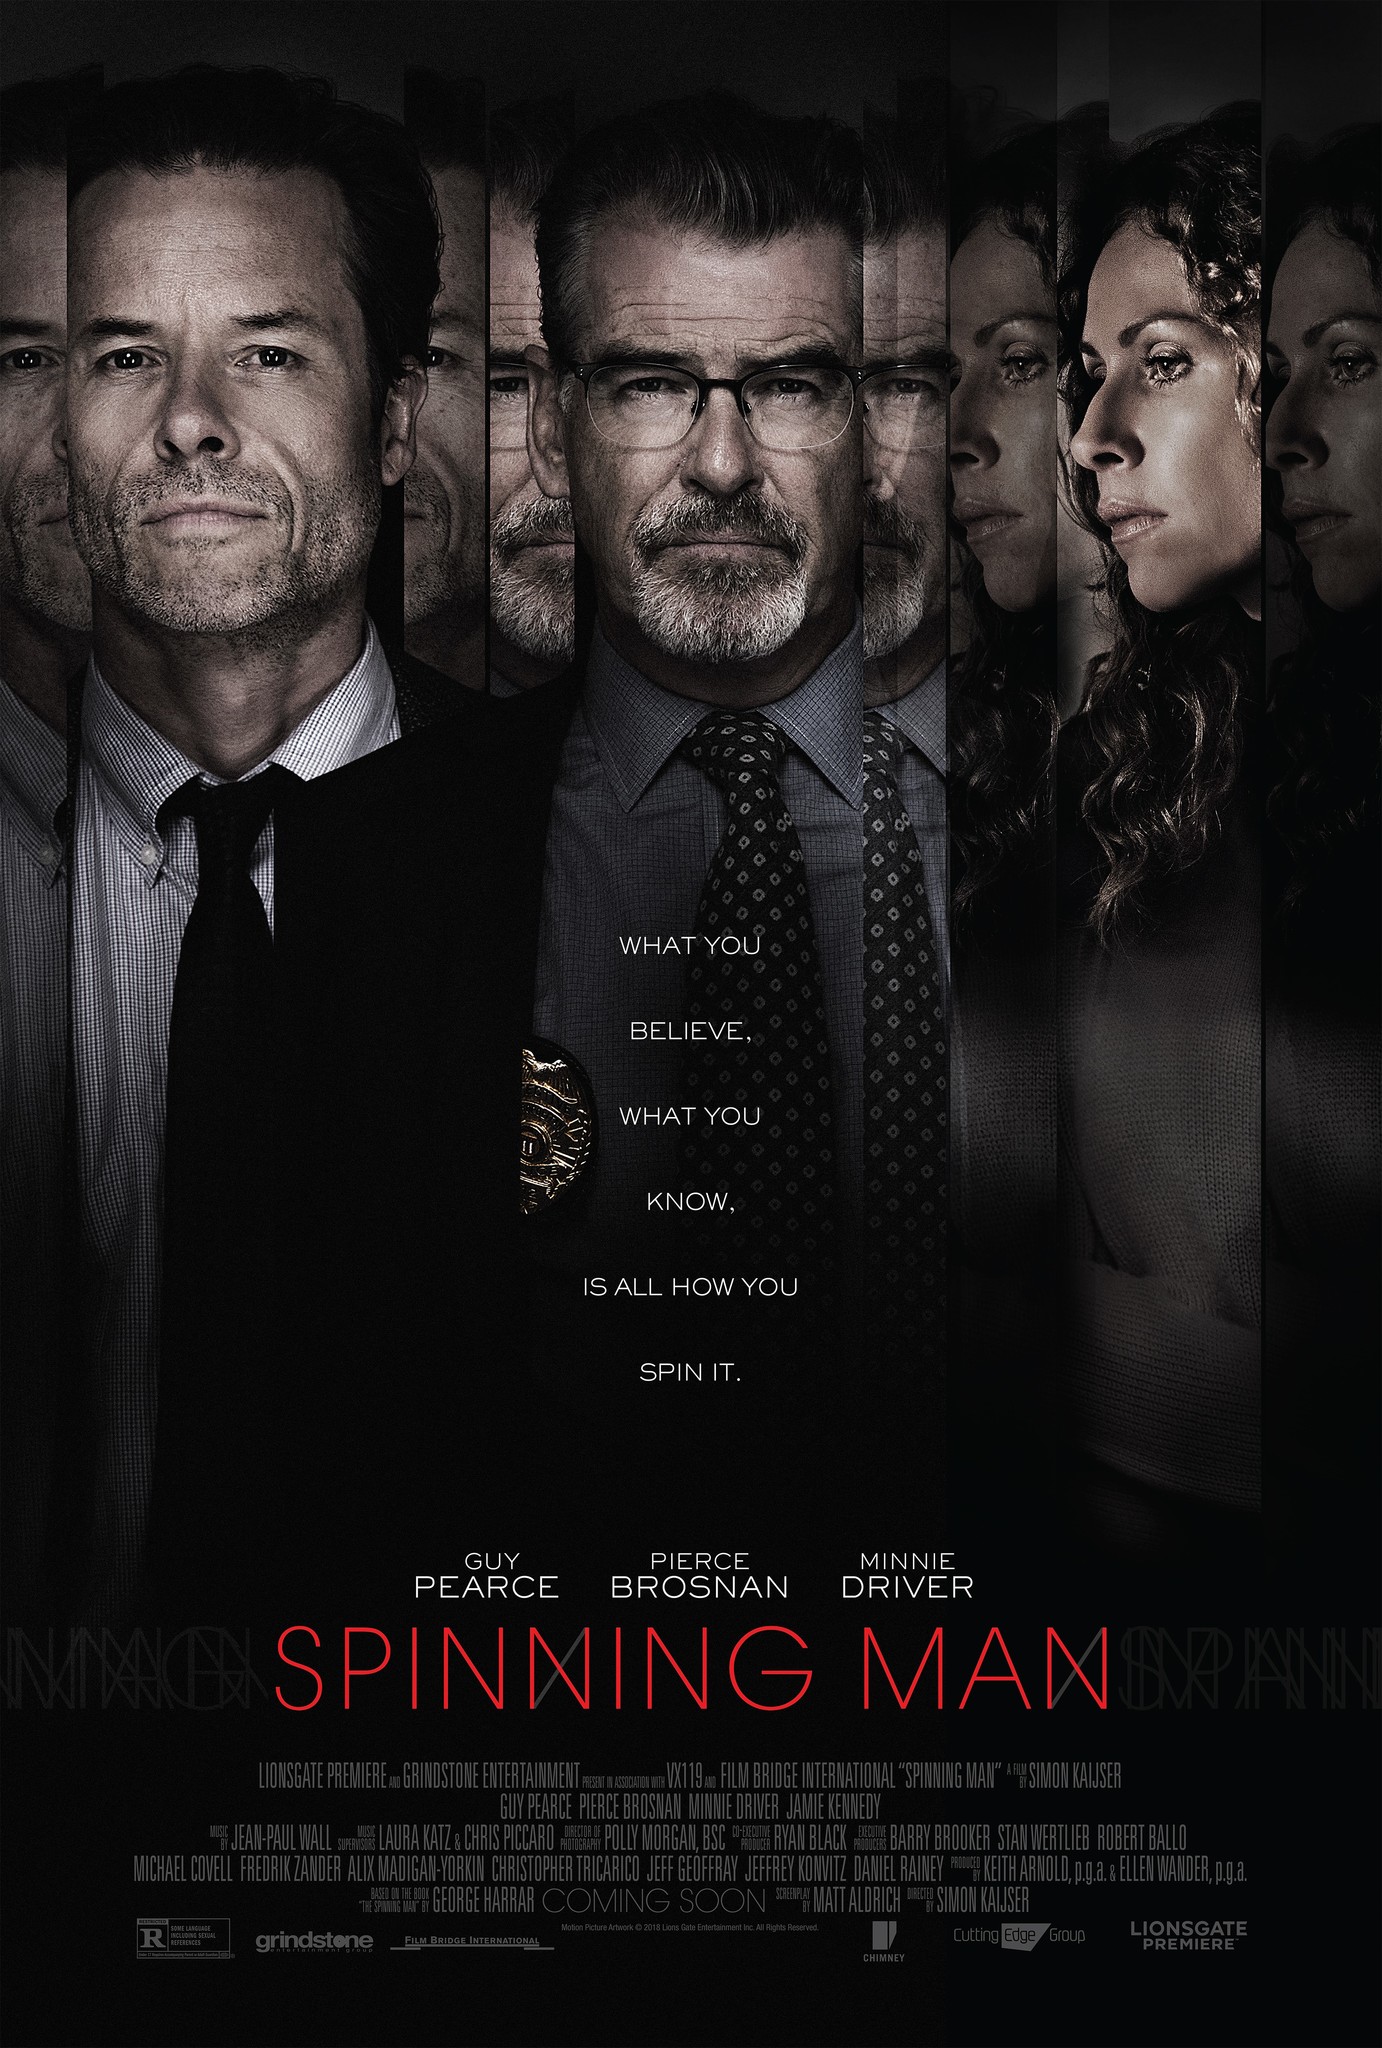 Nonton film Spinning Man layarkaca21 indoxx1 ganool online streaming terbaru